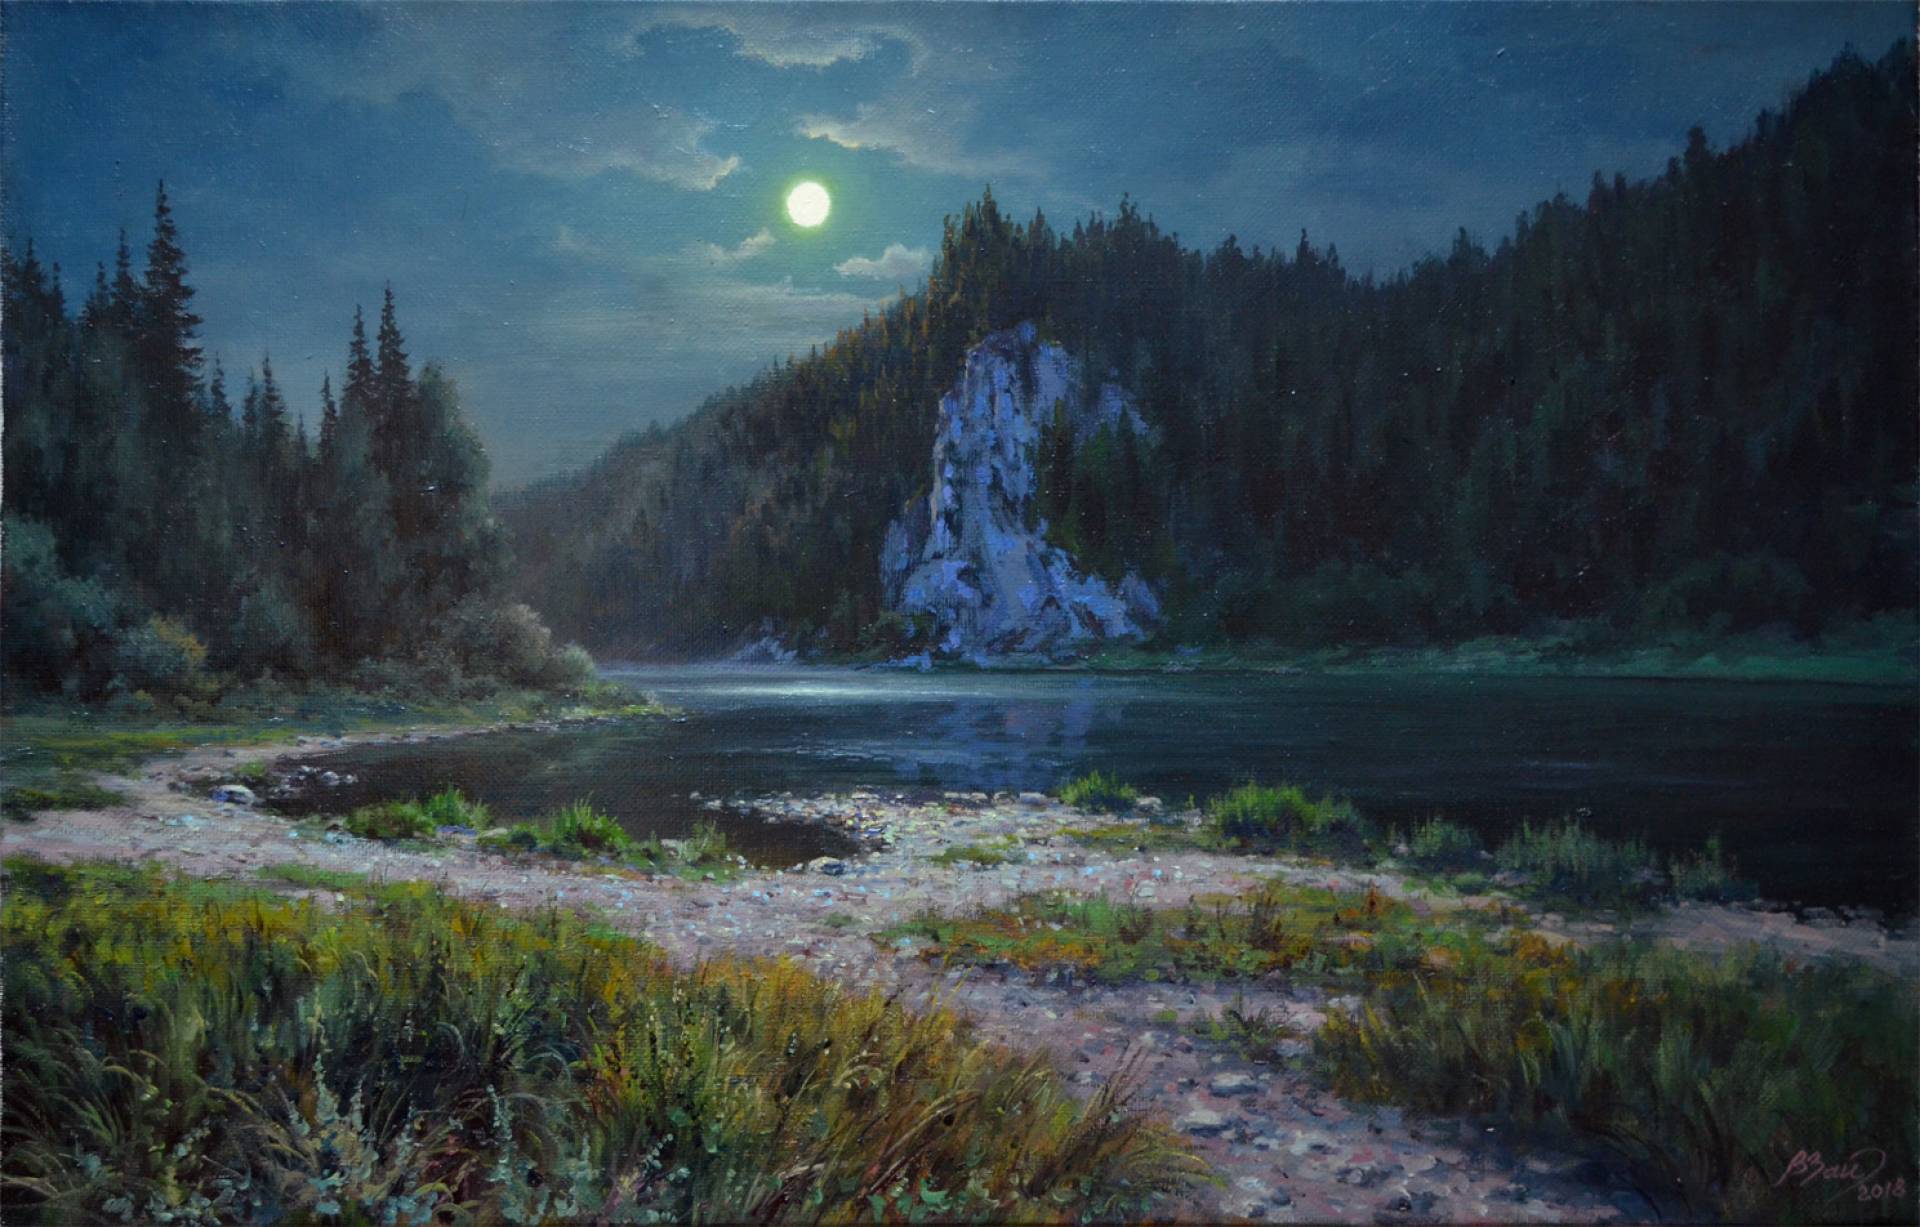 Night on Chusovaya River - 1, Vadim Zainullin, Buy the painting Oil